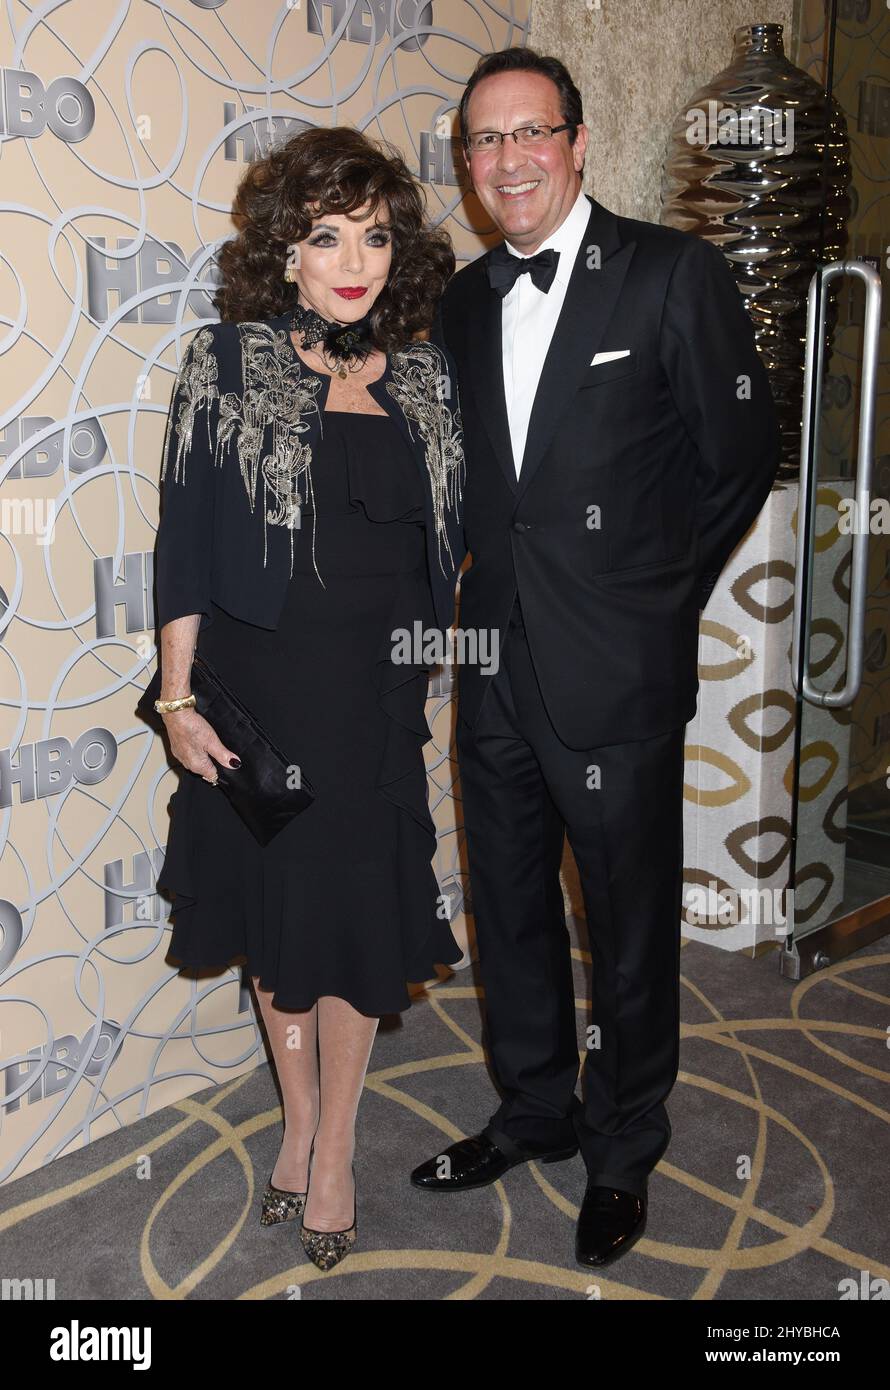 Joan Collins und Percy Gibson nahmen an HBO'S Golden Globes Teil, nachdem sie im circa 55 Restaurant gefeiert hatten Stockfoto